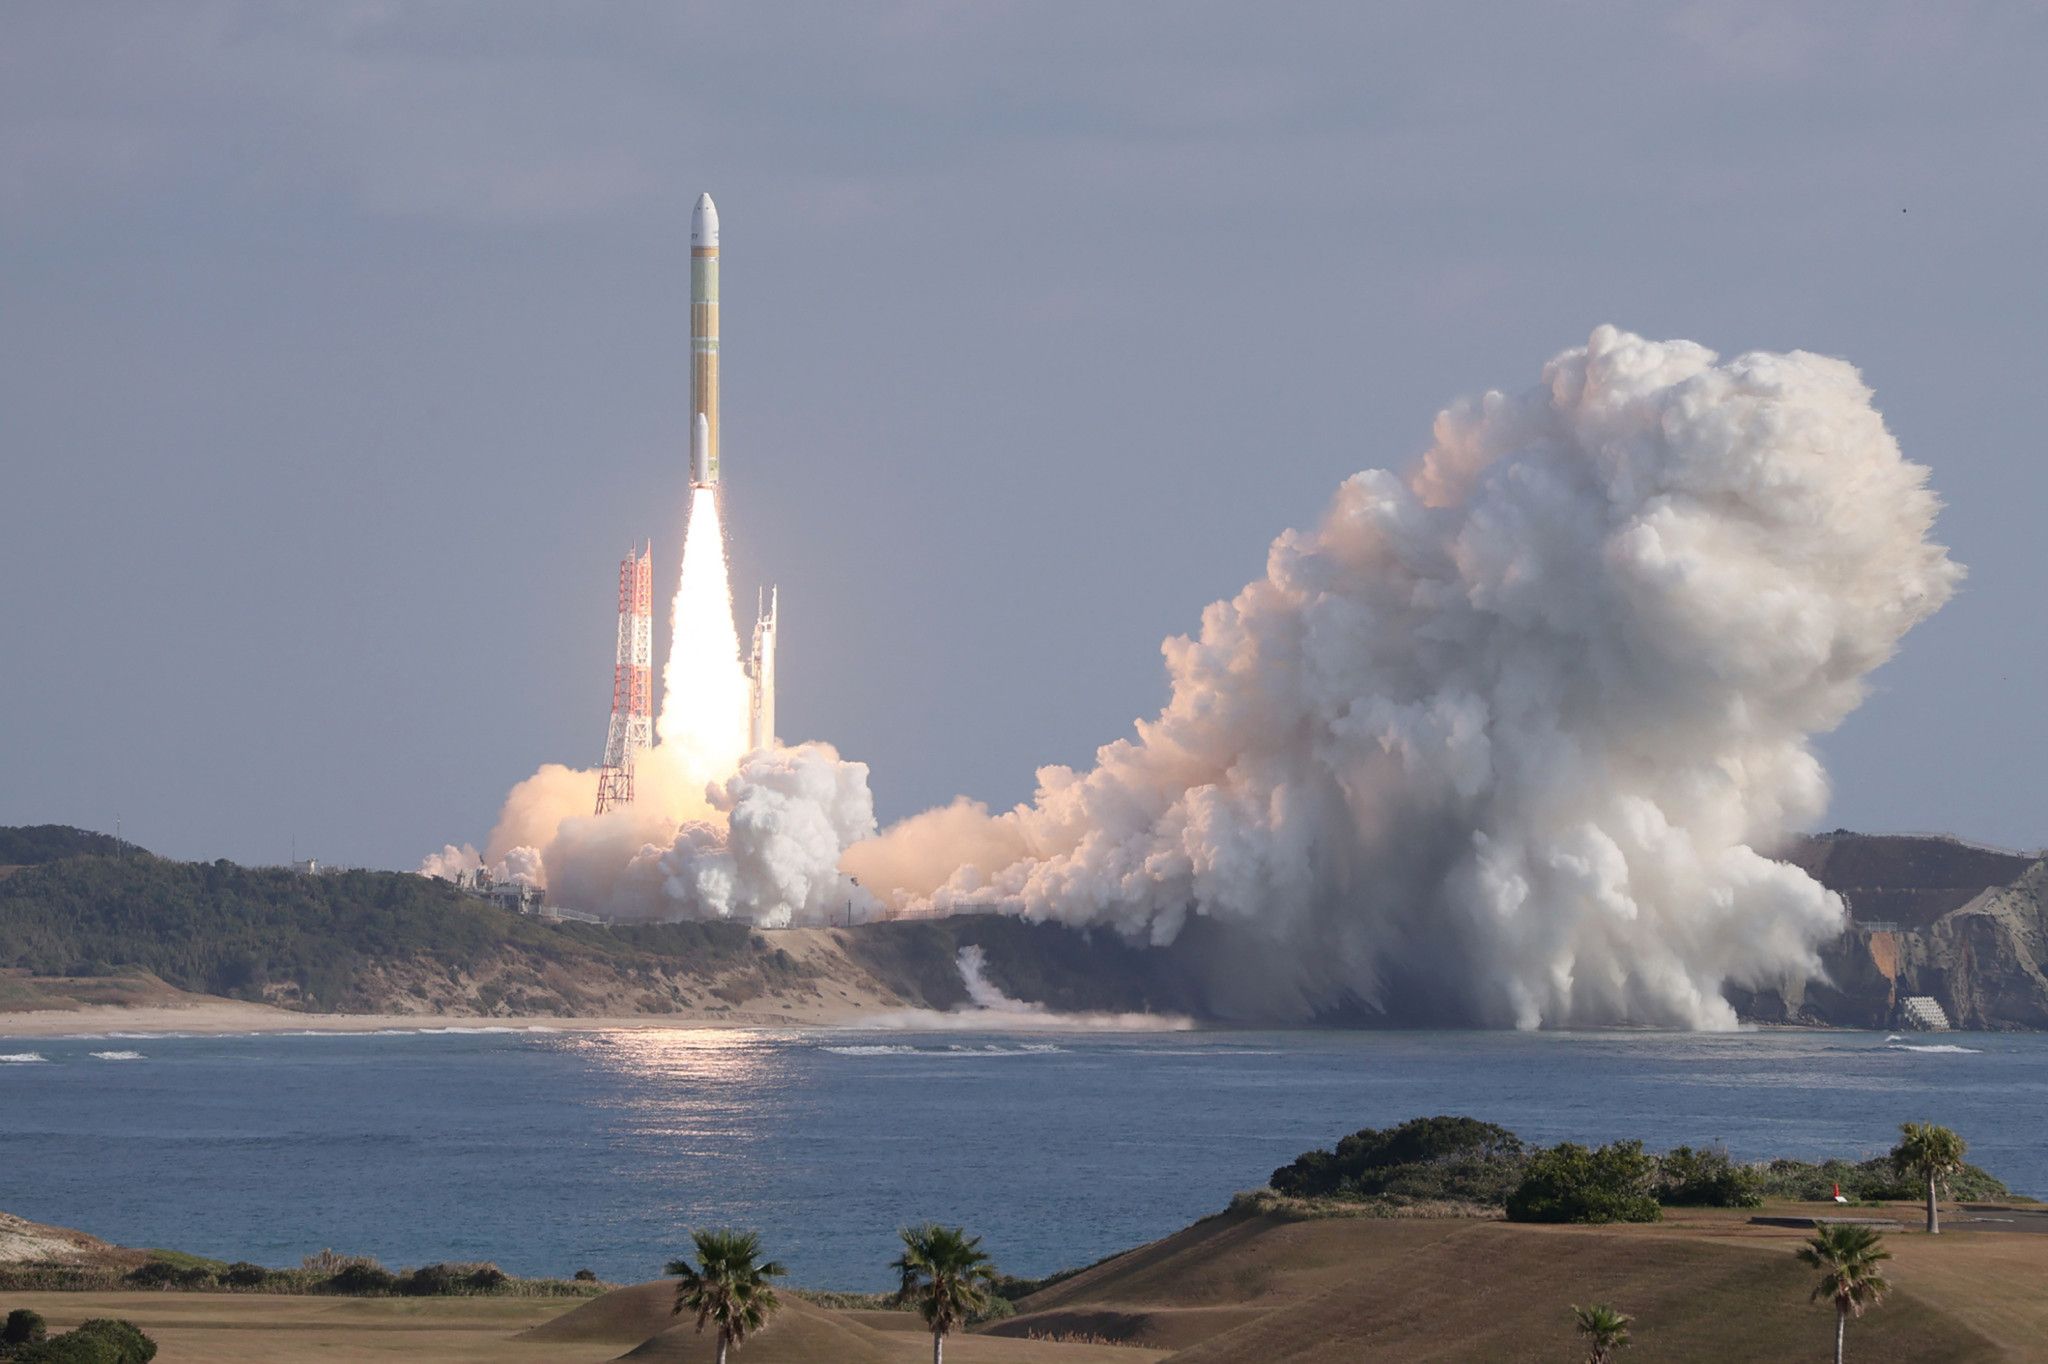 Le Japon envoie sa nouvelle fusée H3 dans l'espace